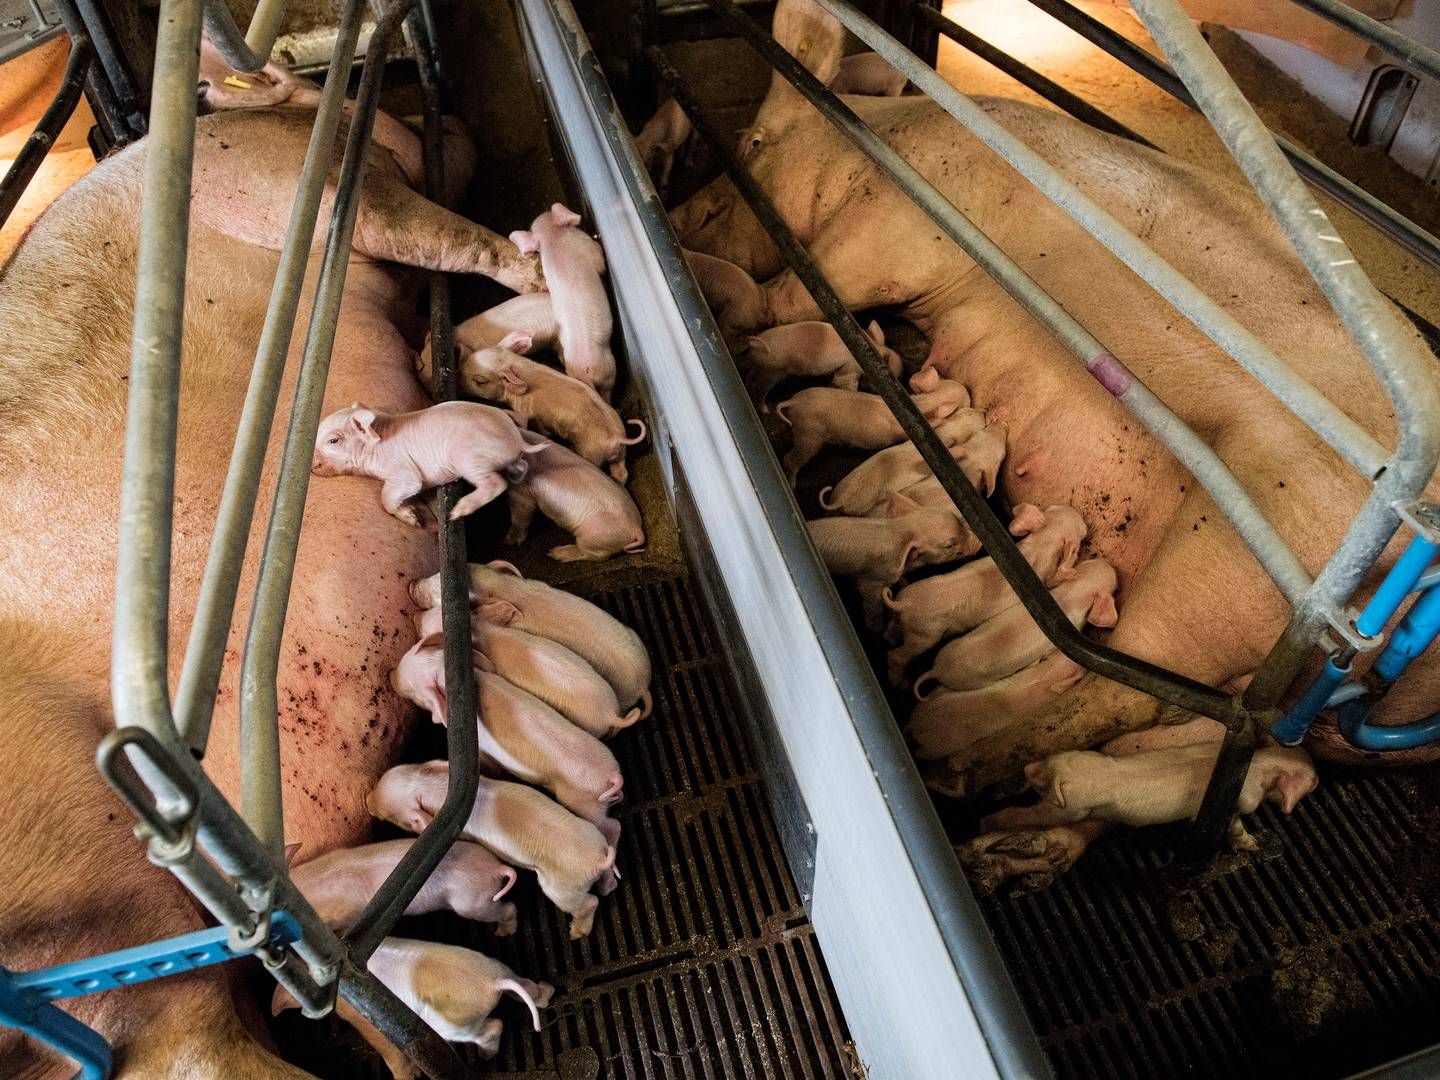 Satsningen på grise har kostet Danhatch et trecifret millionbeløb gennem årene. | Foto: Casper Dalhoff